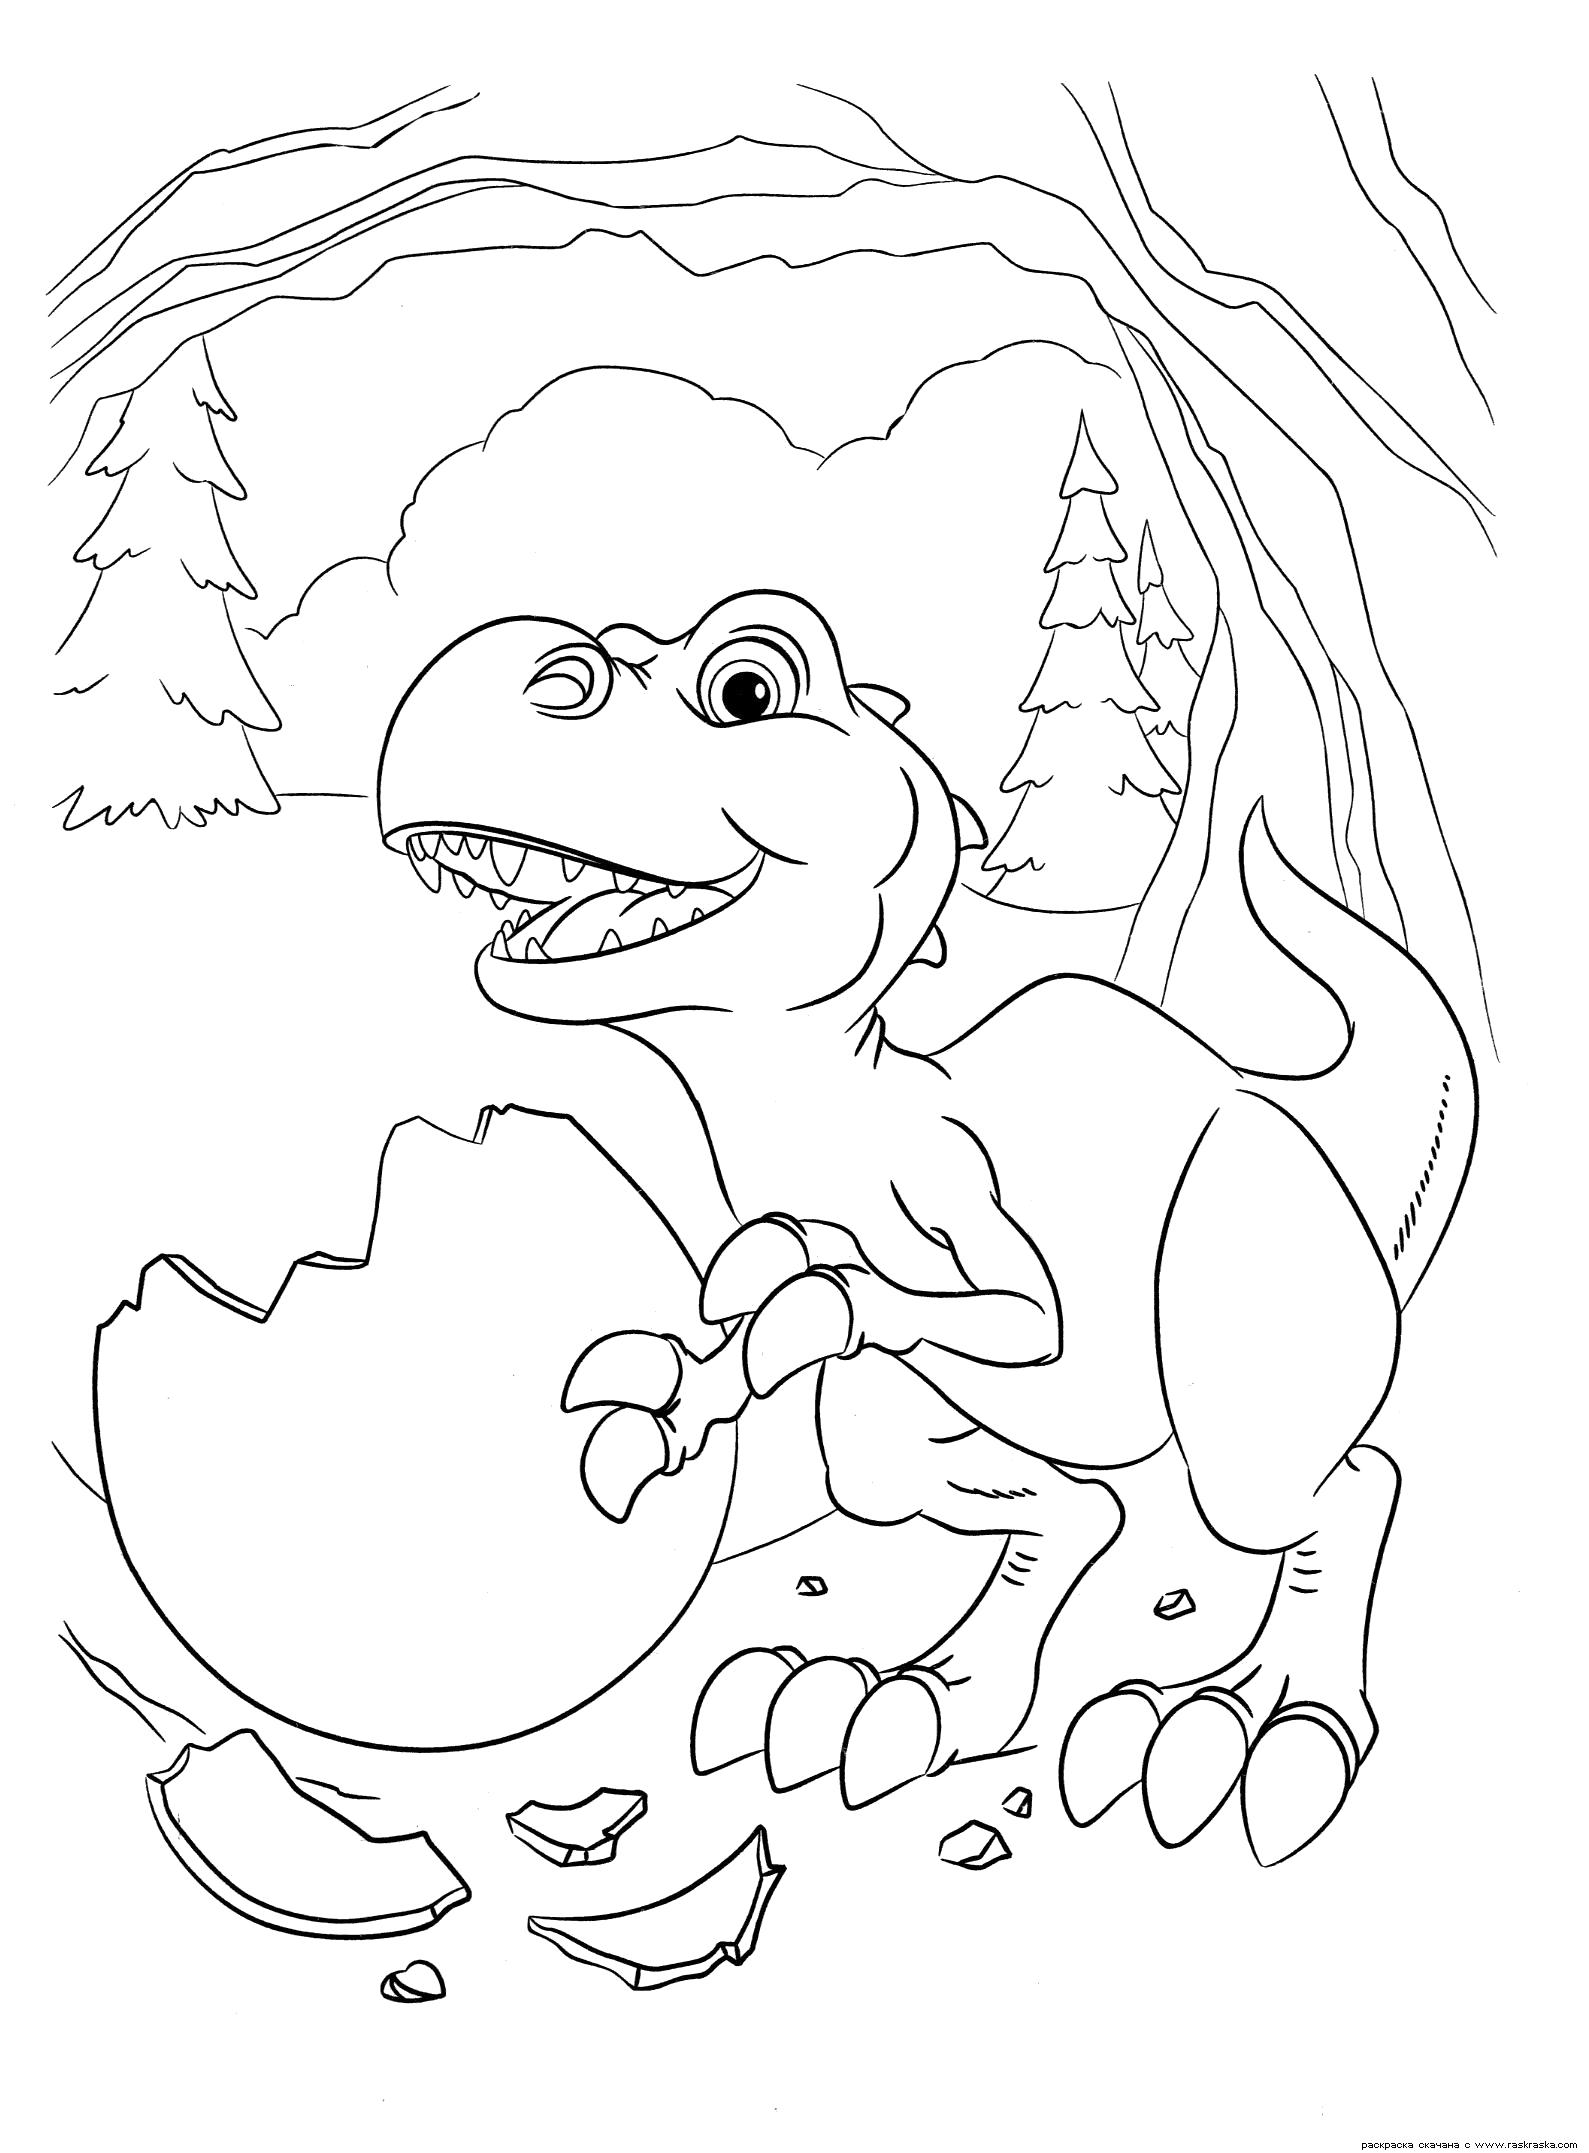 Раскраска Раскраска Малыш динозаврик. Раскраска Раскраска динозавр, разукрашка яйцо, скорлупа, картинки из мультика Ледниковый период 3 Эра динозавров для раскрашивания. динозавр